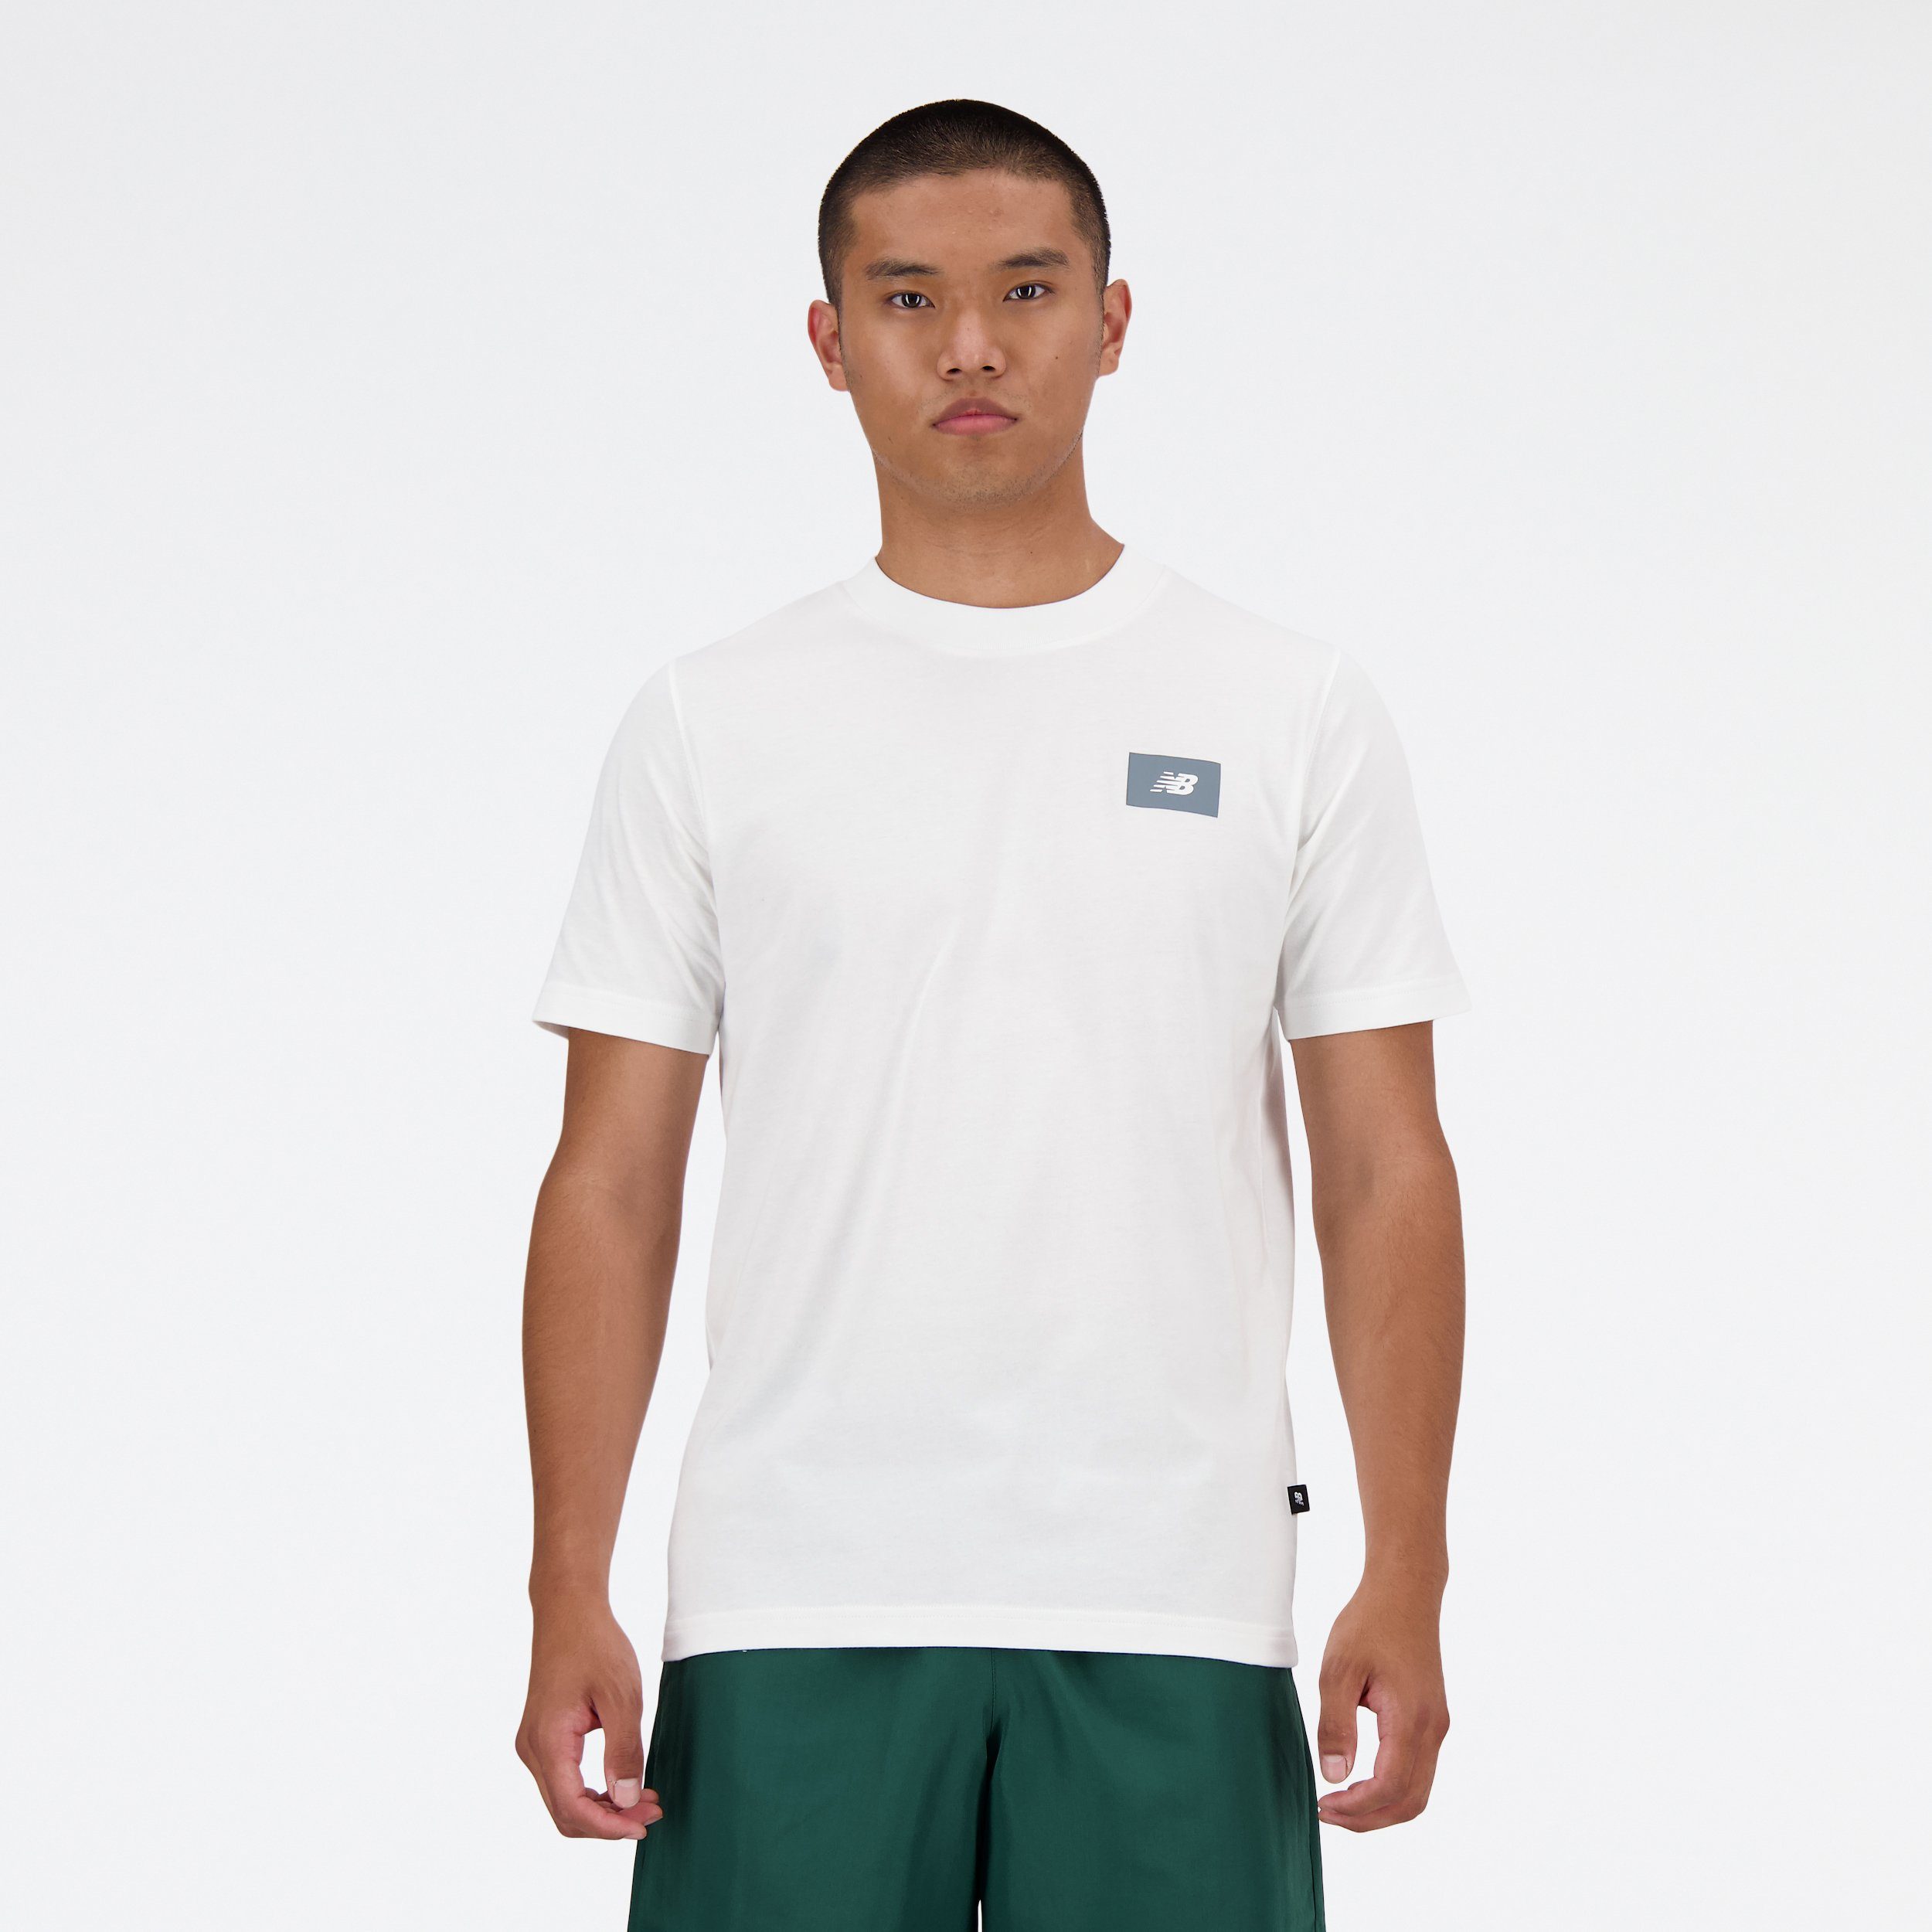 New Balance T-Shirt SPORT ESSENTIALS LOGO T-SHIRT